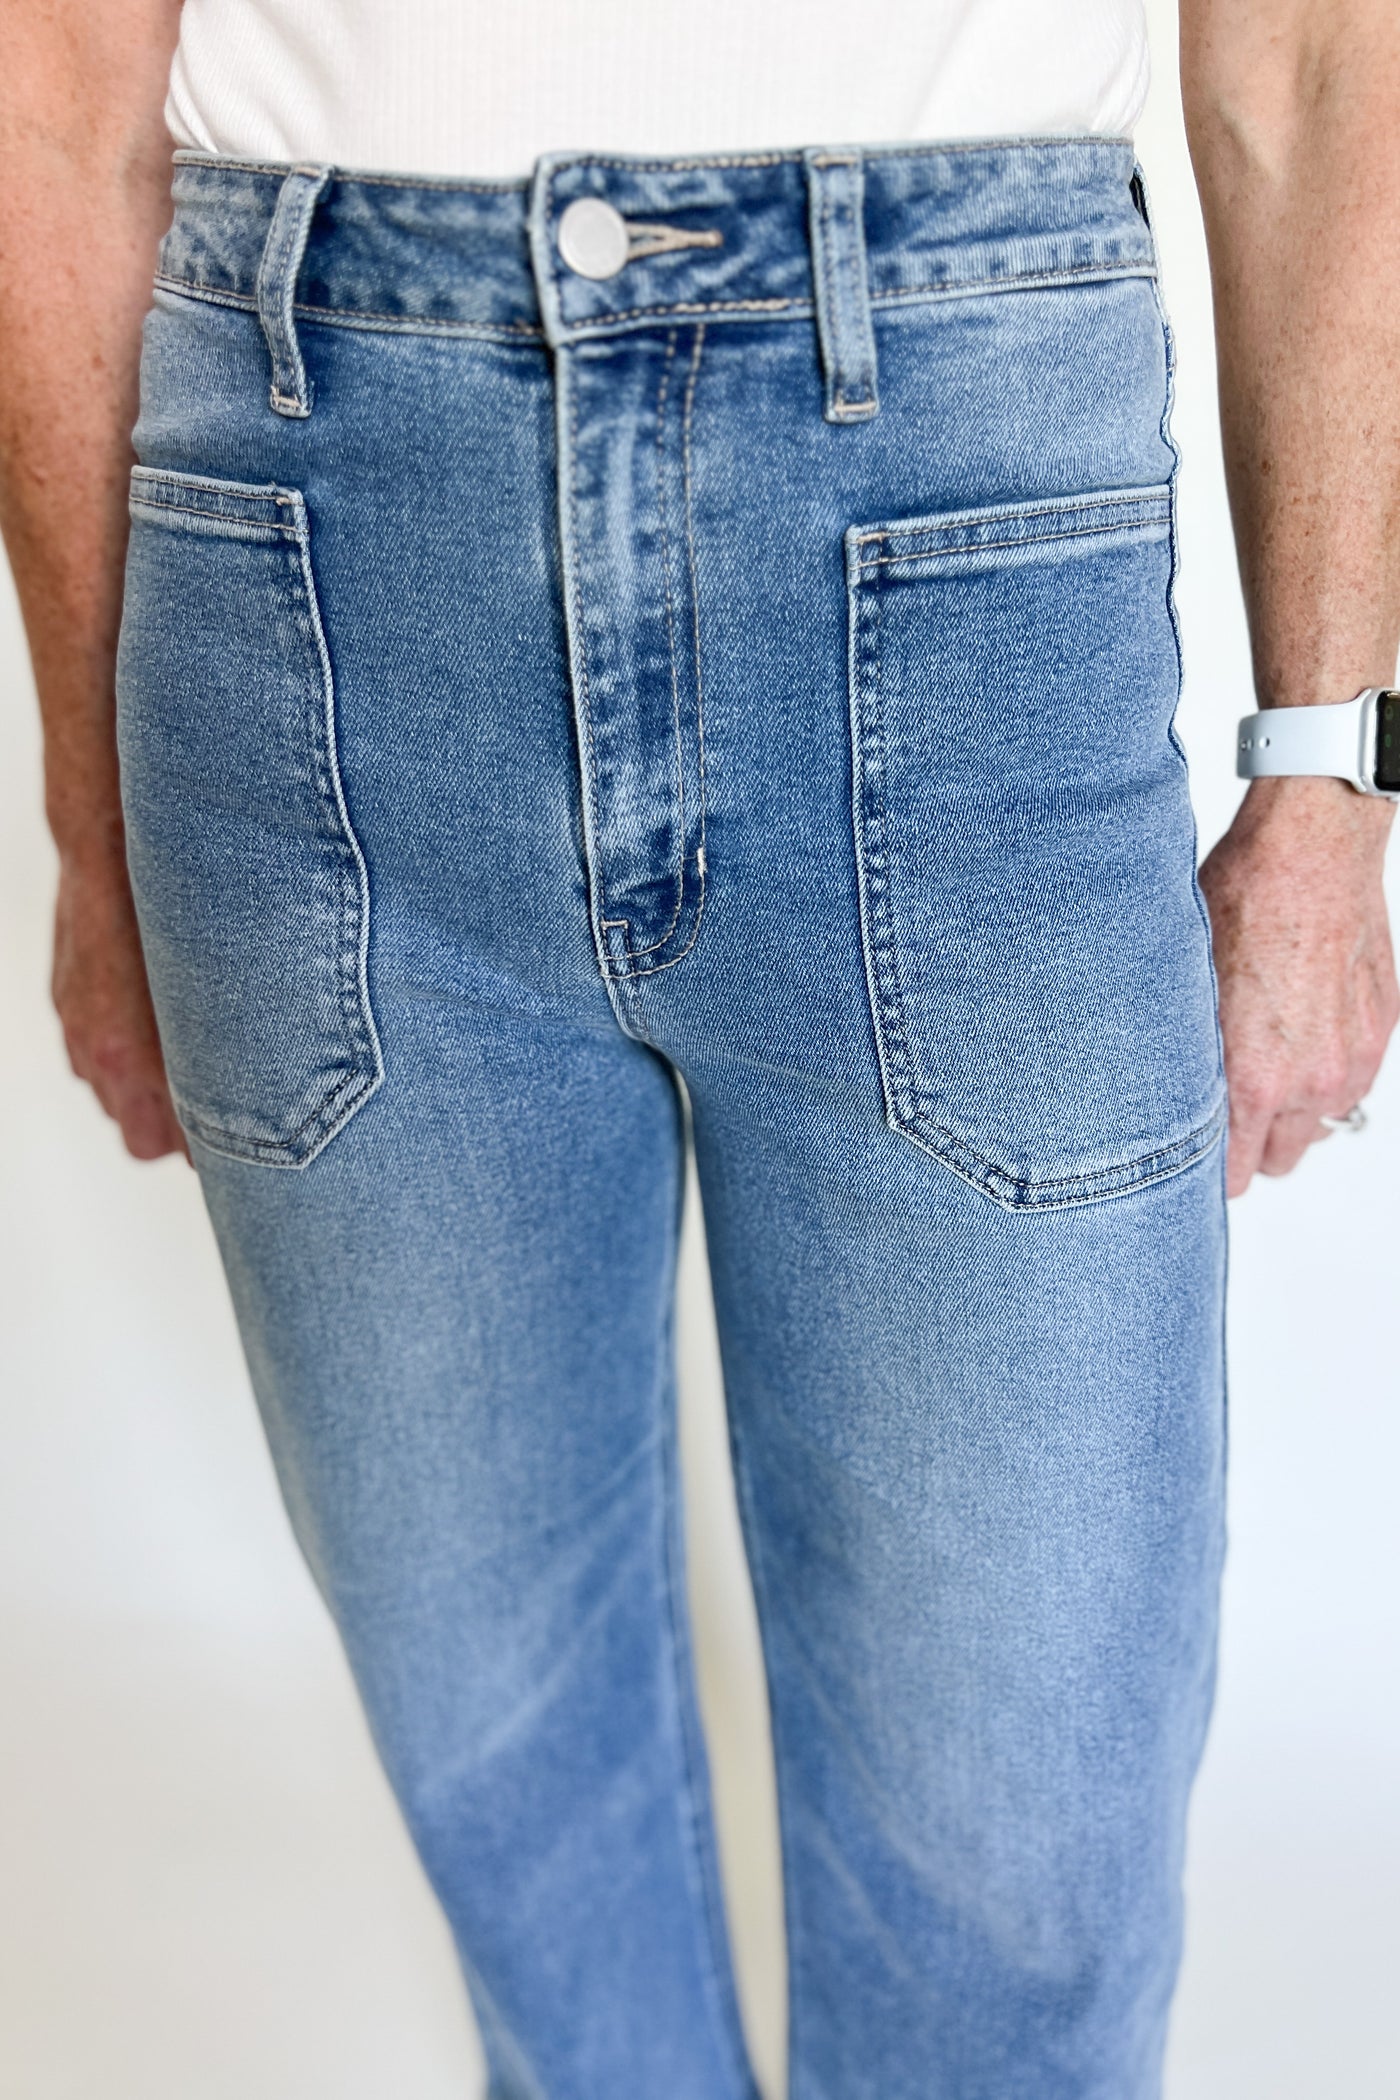 Tabatha jeans, medium denim